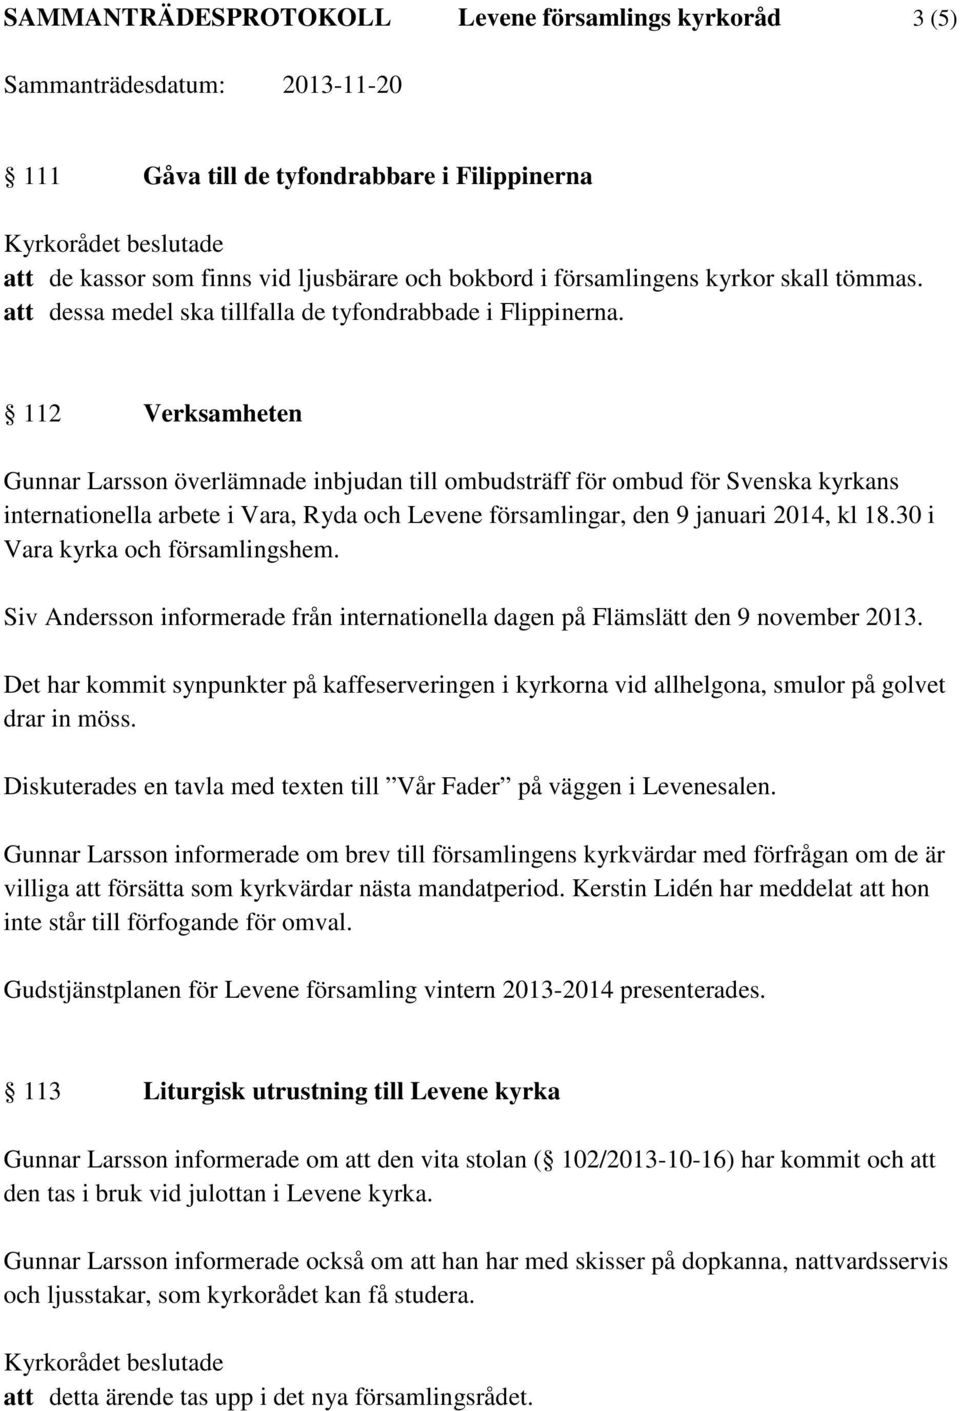 112 Verksamheten Gunnar Larsson överlämnade inbjudan till ombudsträff för ombud för Svenska kyrkans internationella arbete i Vara, Ryda och Levene församlingar, den 9 januari 2014, kl 18.